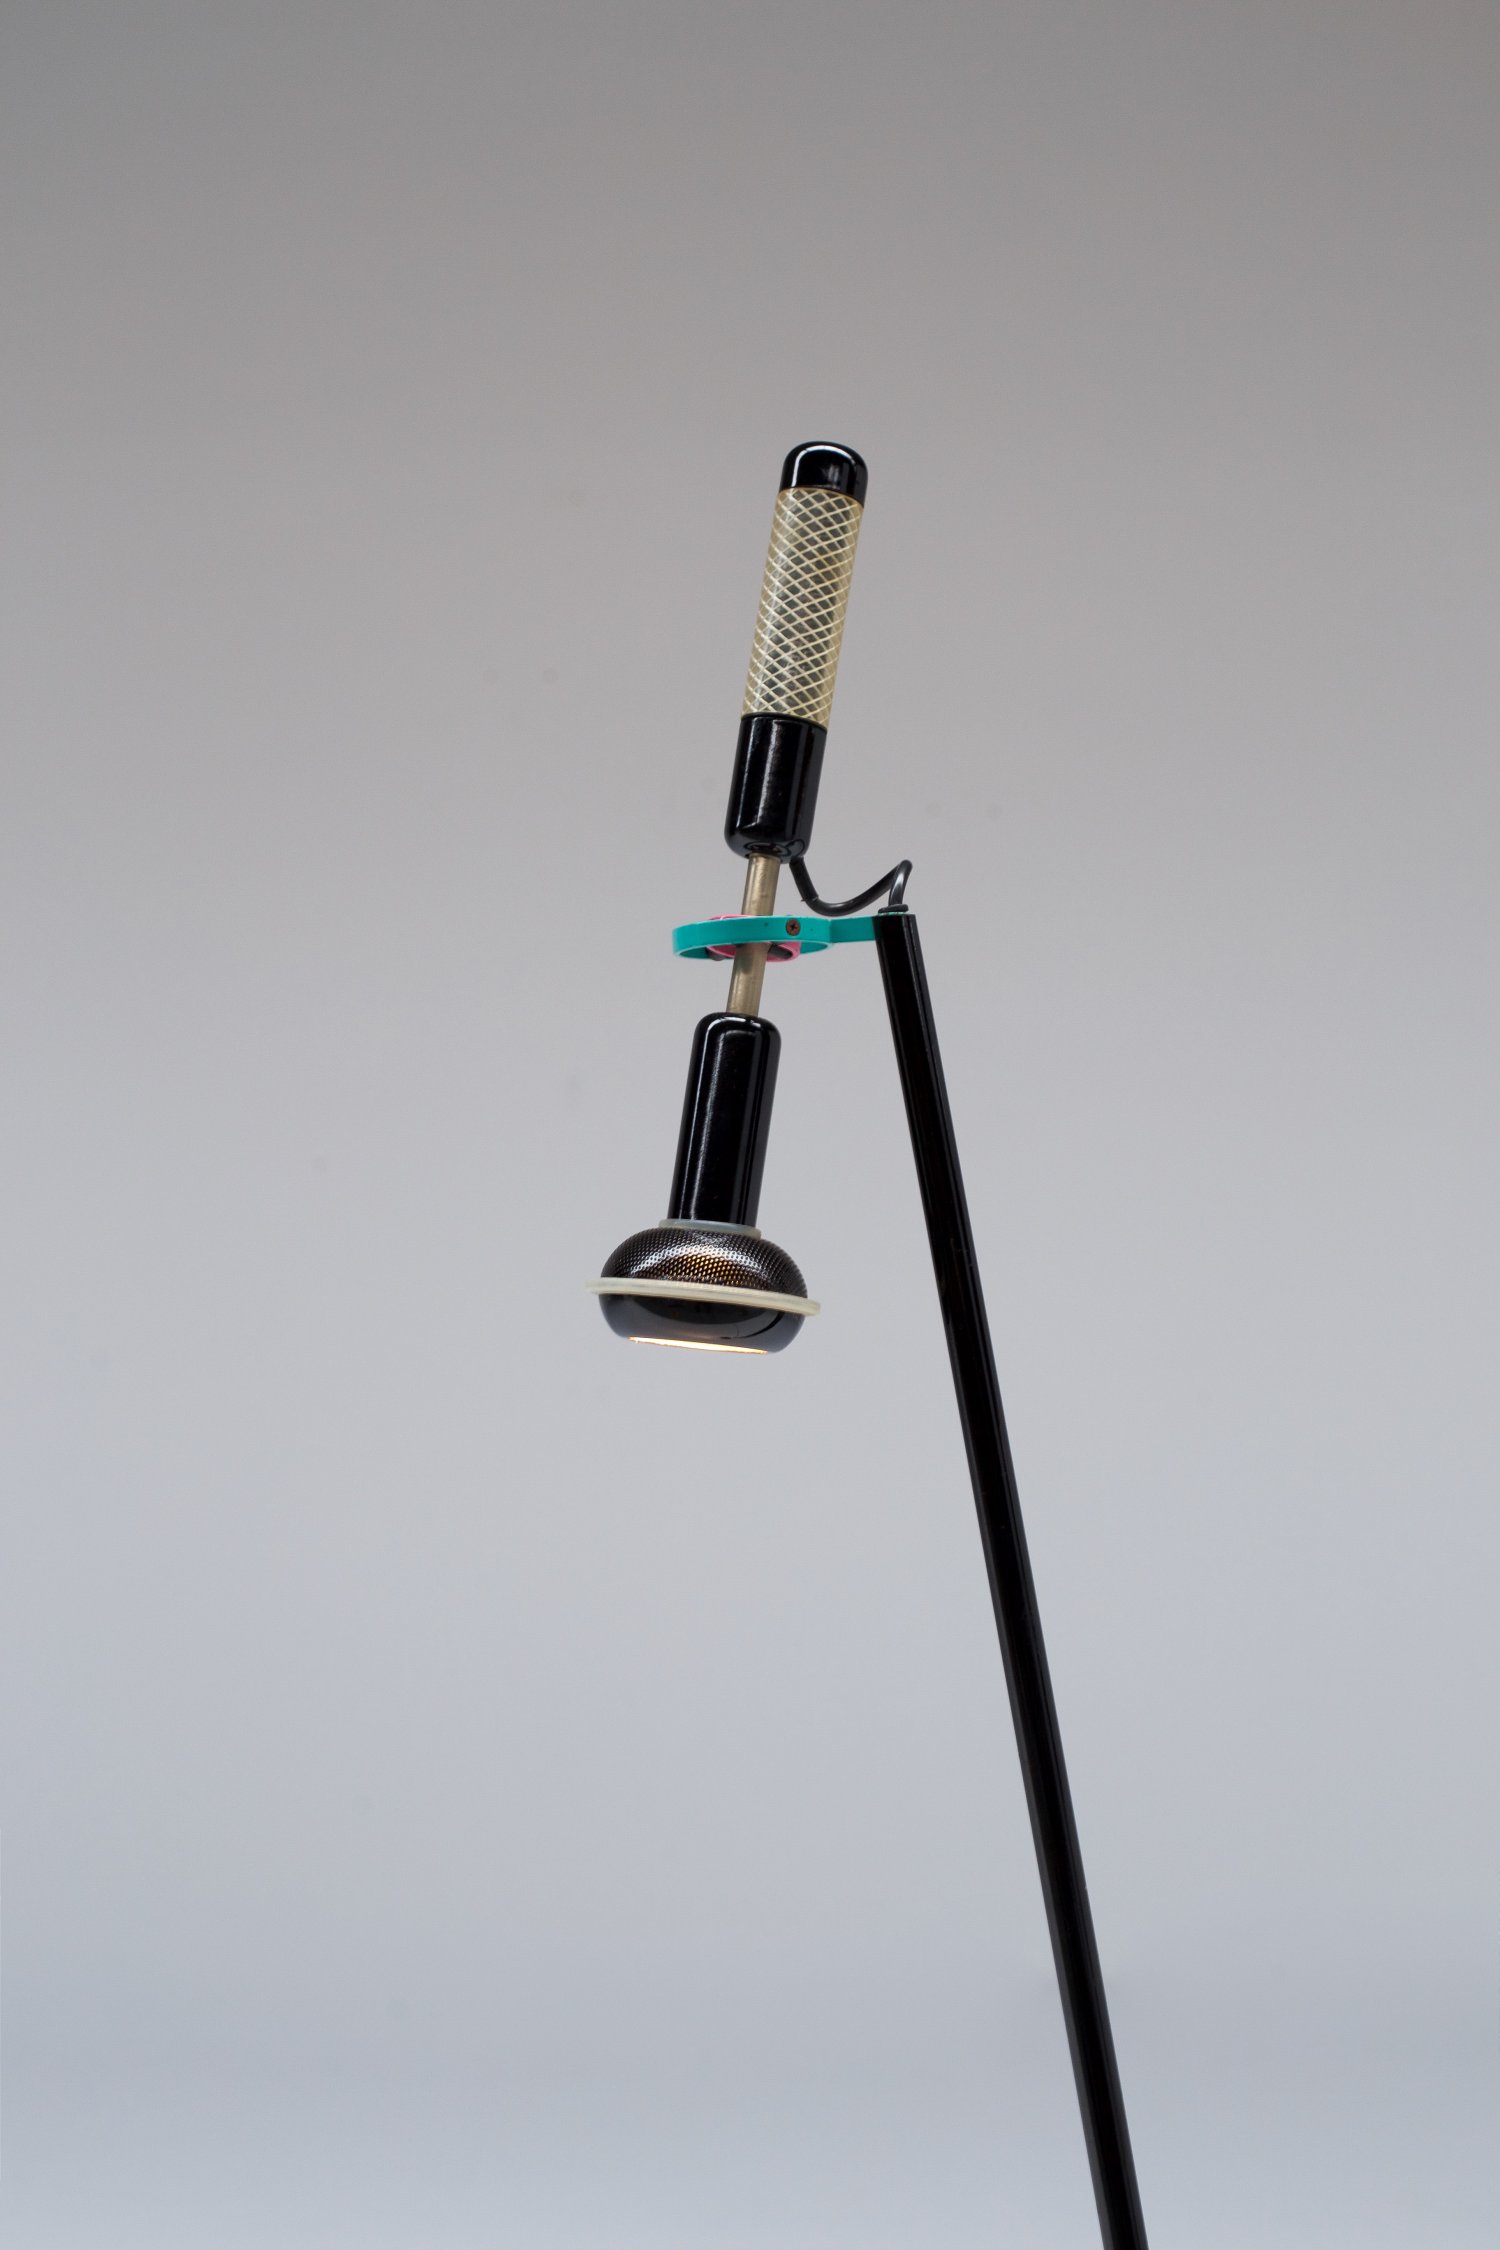 Grip lamp by Achille Castiglioni